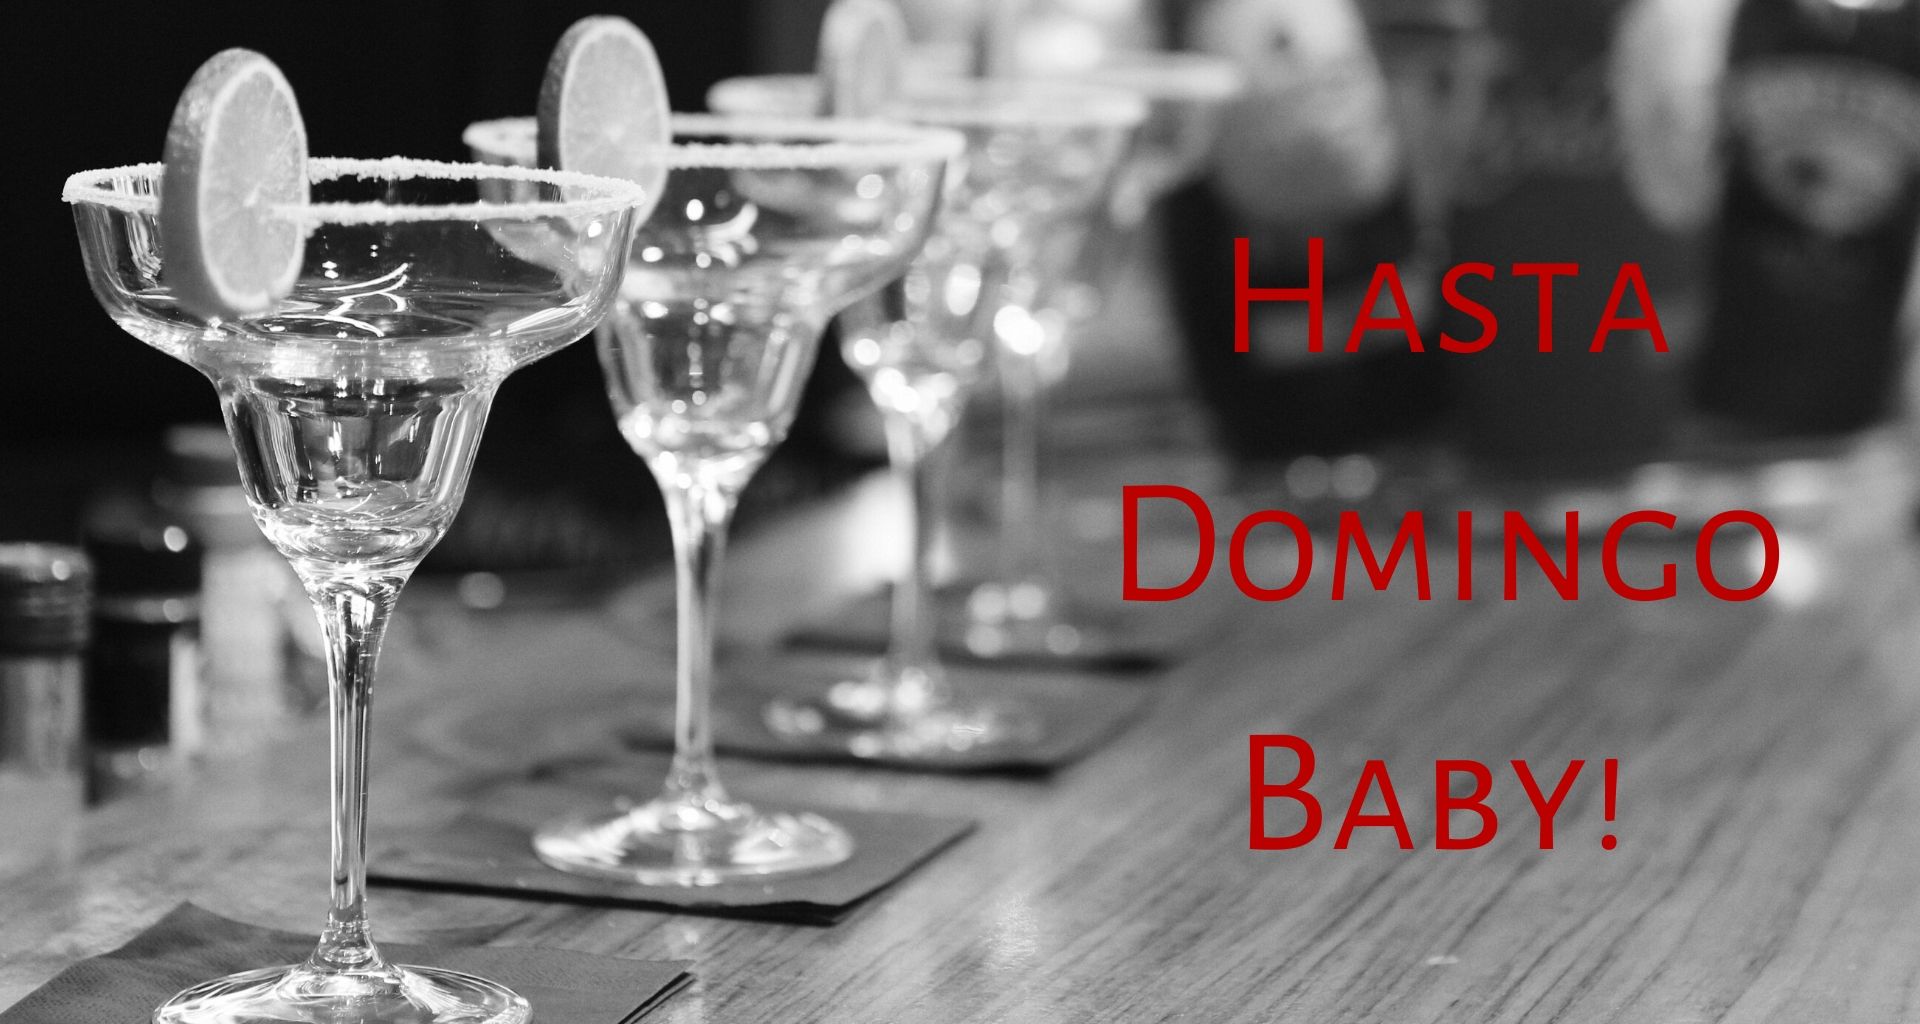 Top Event - Hasta Domingo Baby!